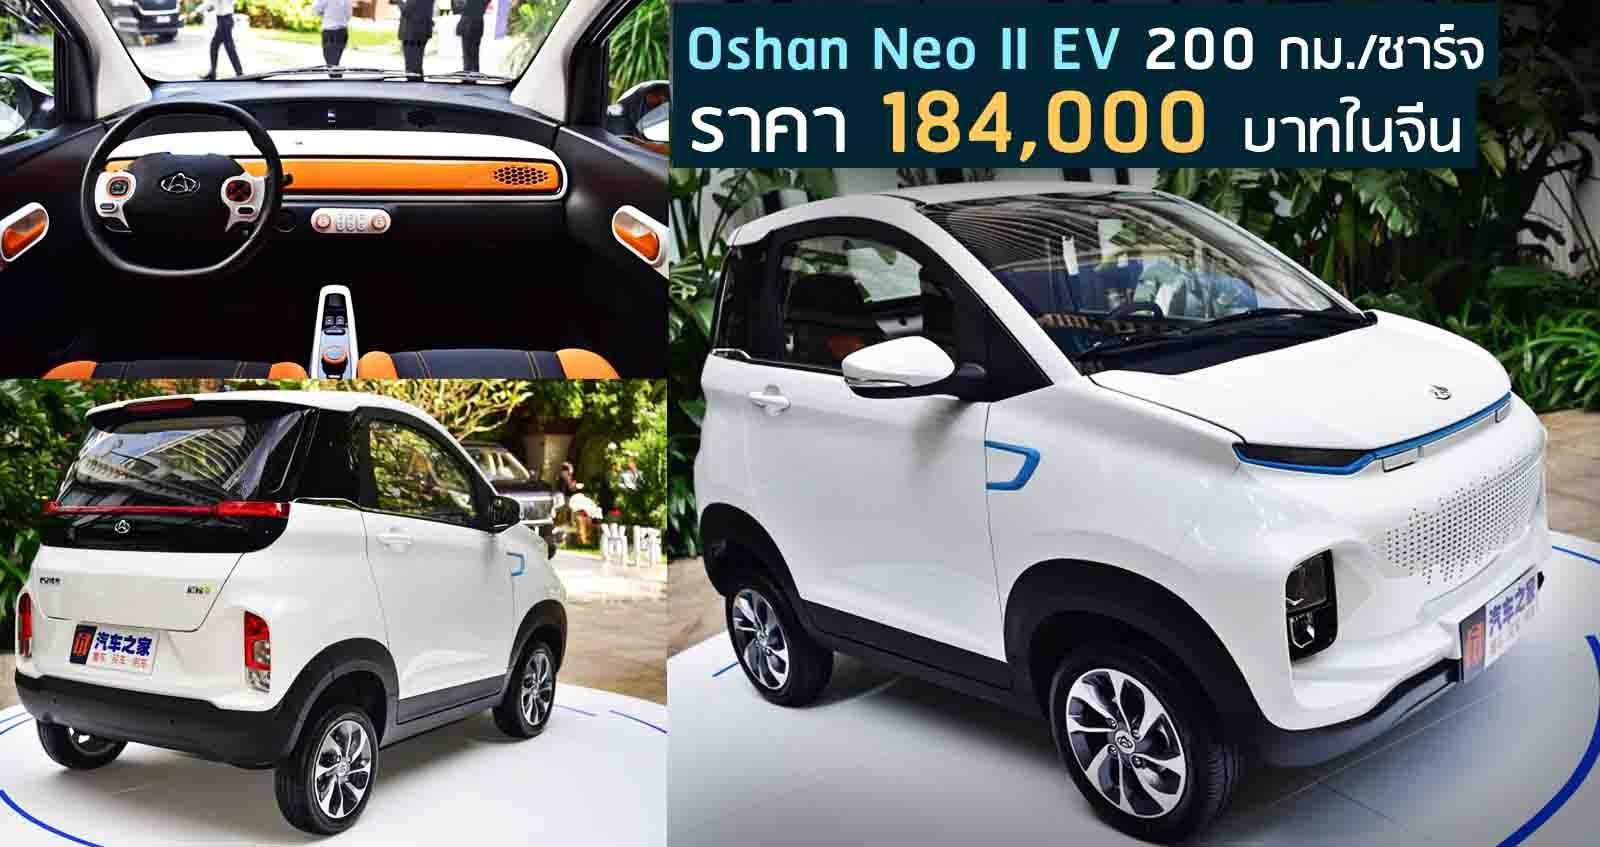 Oshan Neo II EV 200 กม./ชาร์จ ราคา 184,000 บาทในจีน